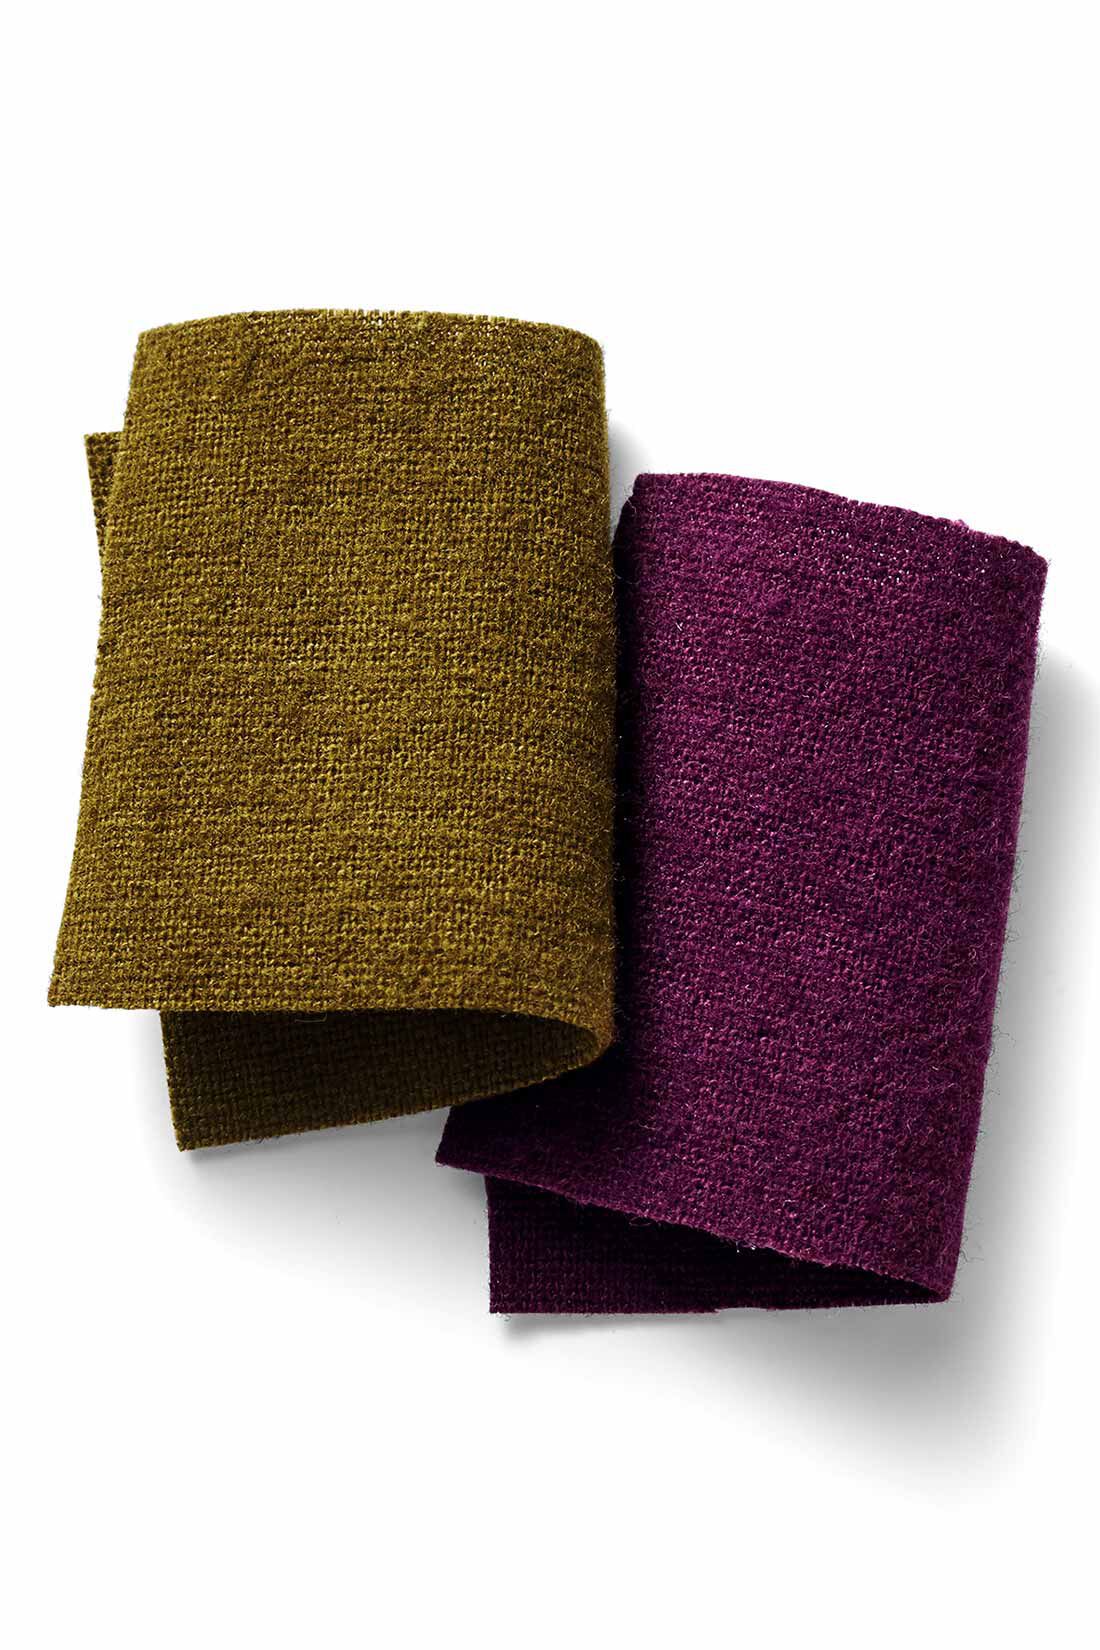 MEDE19F|MEDE19F　麻混起毛素材のジャンプスーツ〈ワイン〉|さっくり軽いタッチの綿麻キャンバス素材。表面を掻いて起毛させ、上品なあたたかみとやわらかさを付与しています。